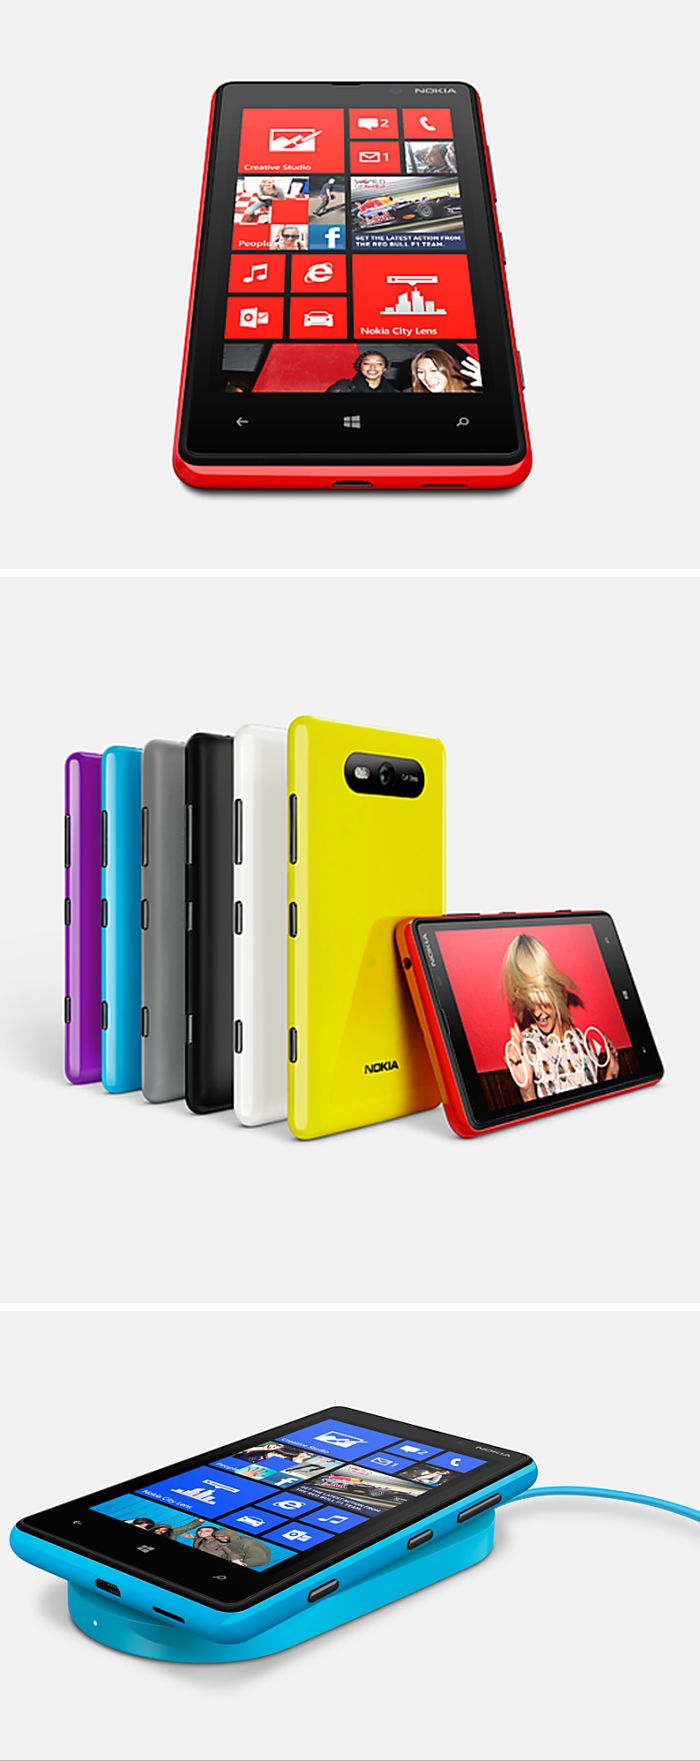 Hivatalos a Nokia Lumia 820 és a Lumia 920!